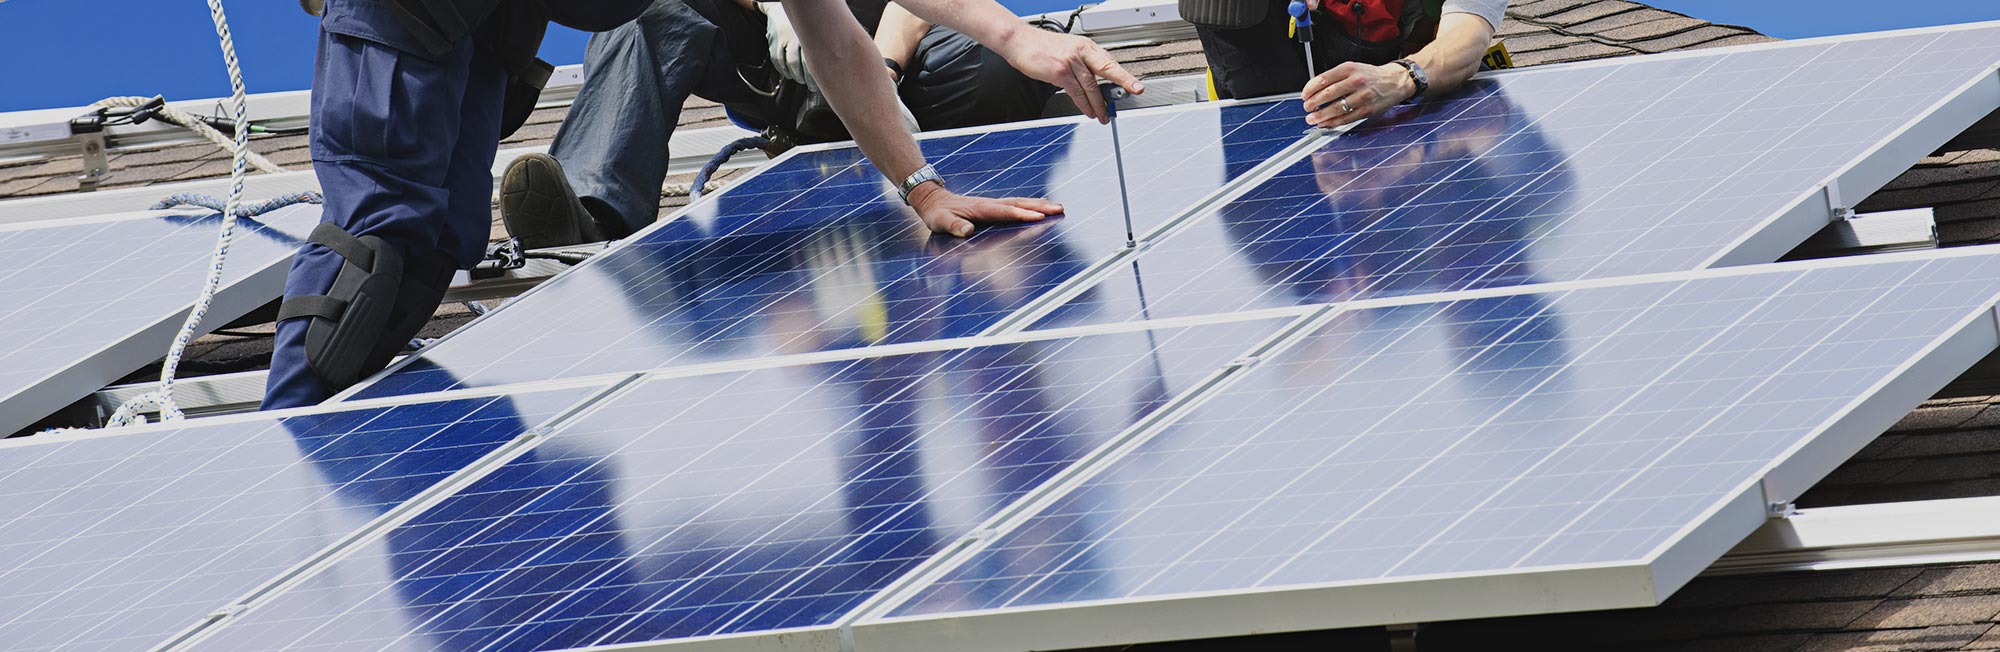 Fotovoltaický rozbočovač Sunpulse SMC4-2Y je určený pro solární aplikace ve venkovním prostředí.